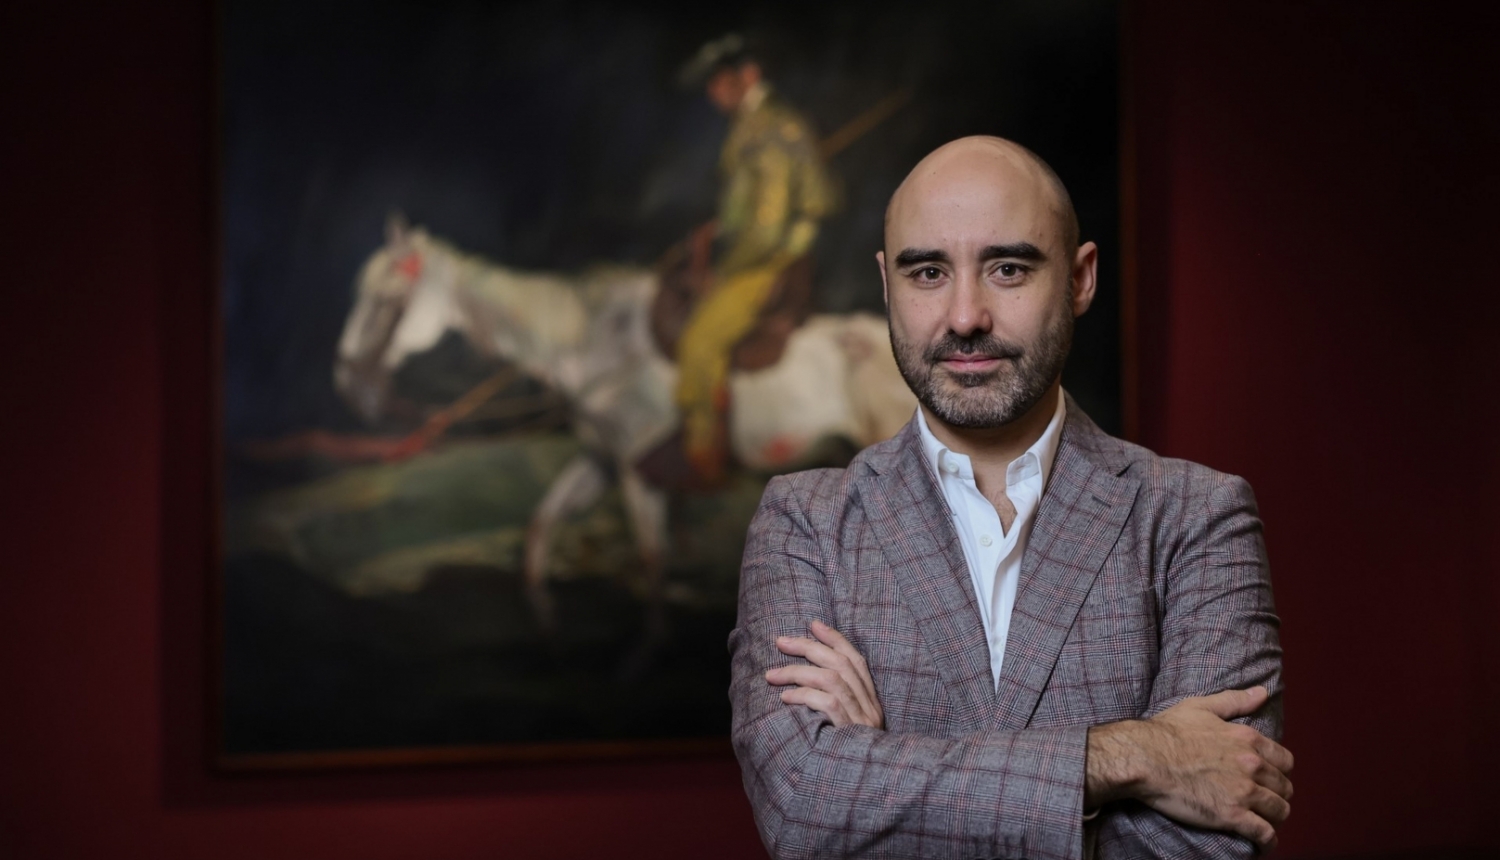 Spāņu mākslas vēsturnieks, kurators Karloss Alonso Peress-Fahardo (Carlos Alonso Pérez-Fajardo). Publicitātes foto.